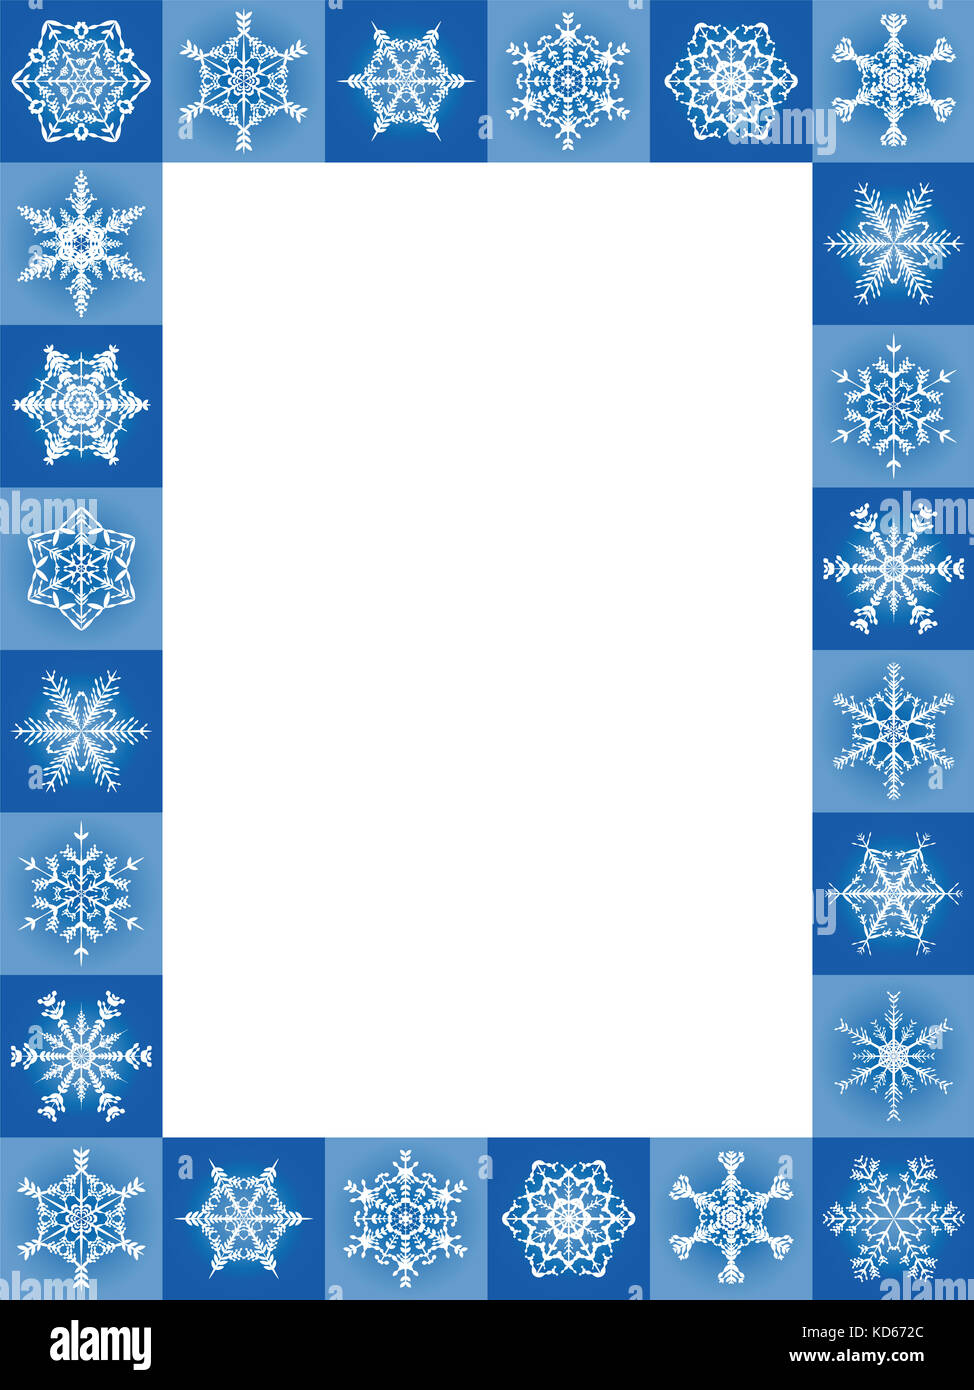 Flocons de neige noël bleu cadre, format vertical - vingt-quatre belles tuiles agréable - illustration avec centre blanc vierge d'être étiquetés. Banque D'Images